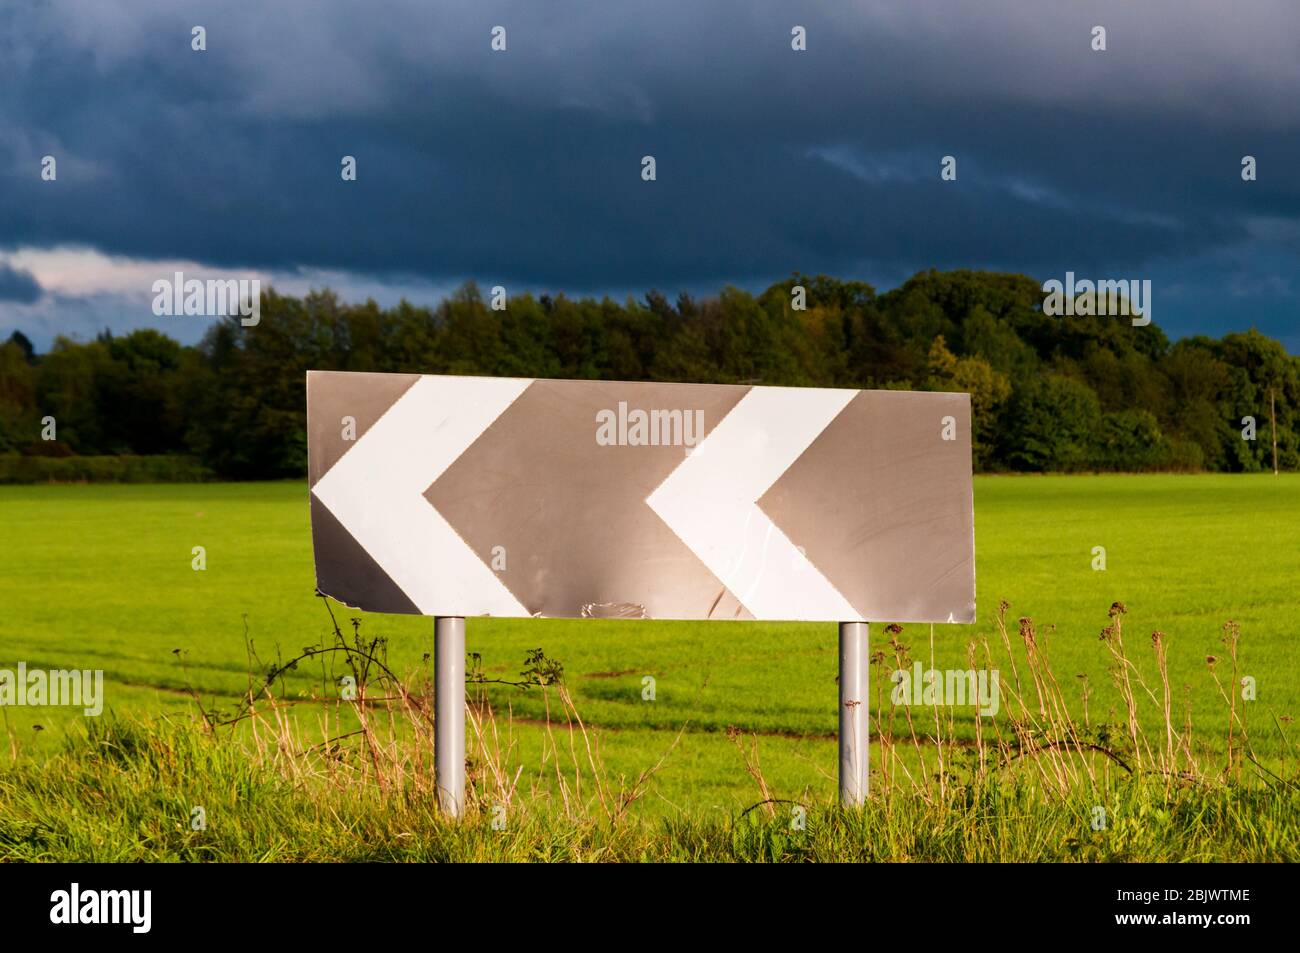 Ein Schild mit Chevron warnt vor einer scharfen Kurve auf einer Landstraße, hinter der dunkle Gewitterwolken stehen. Stockfoto